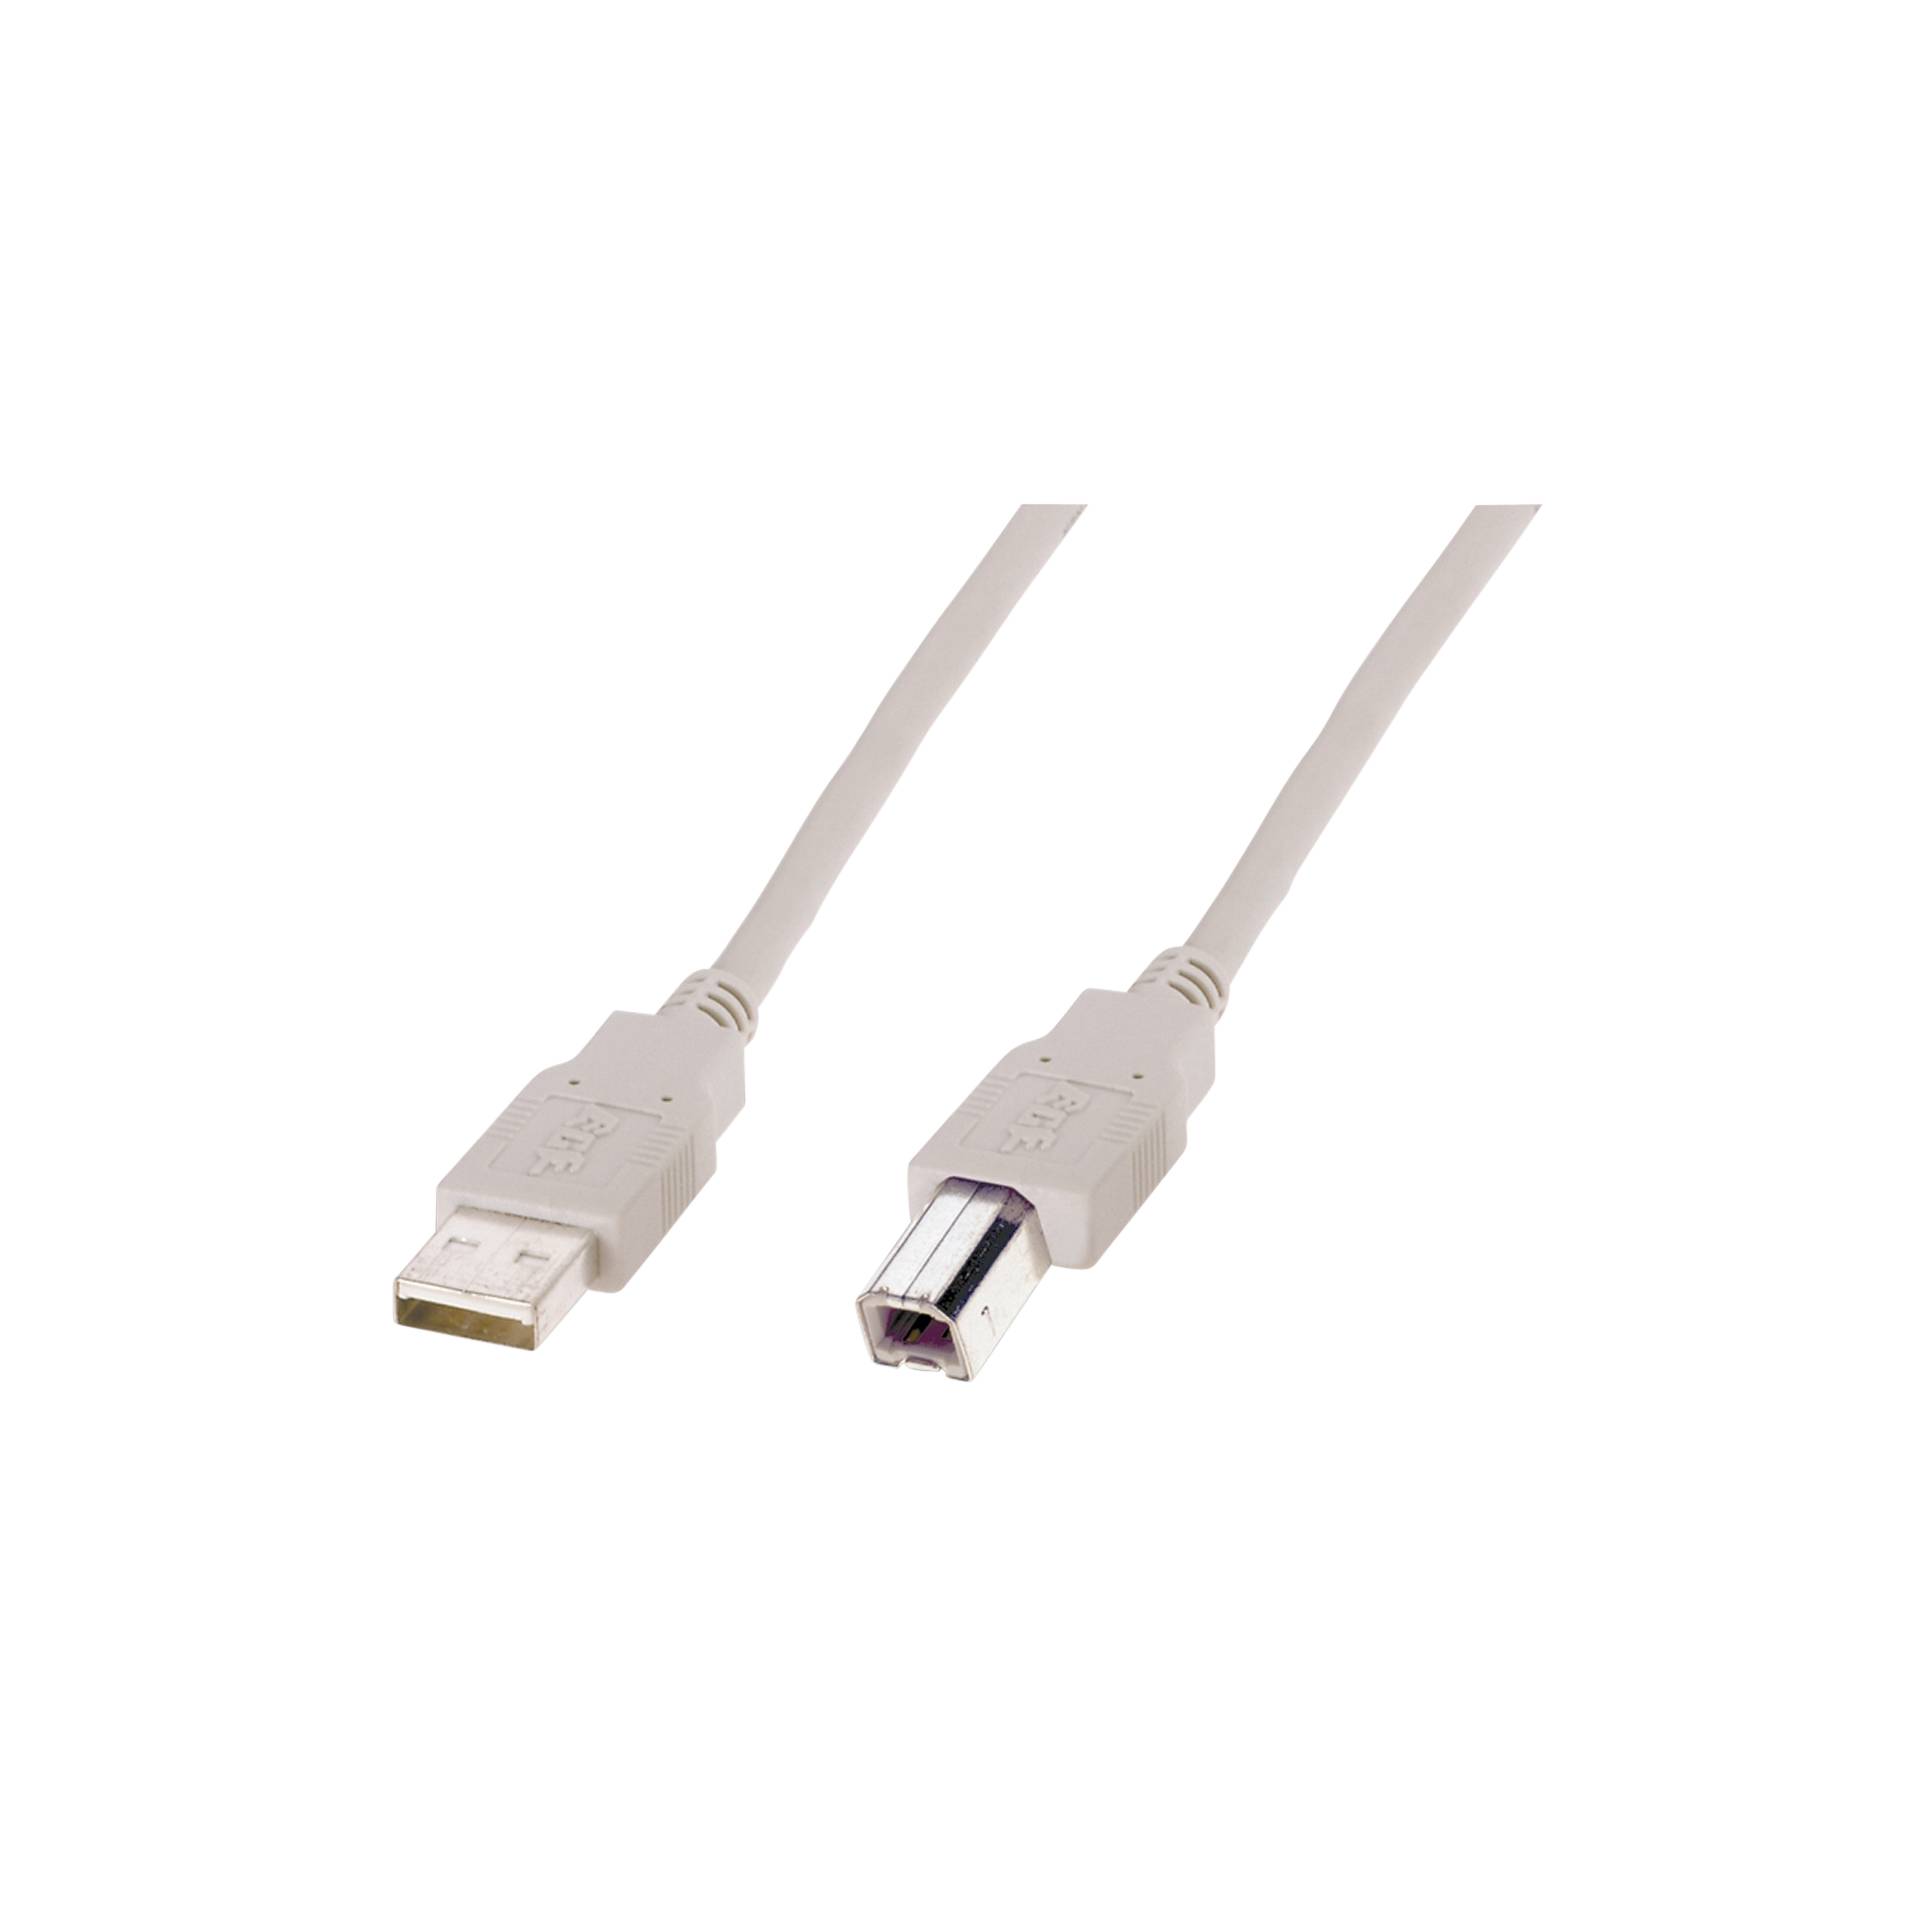 Digitus USB cavo di collegamento Tipo A 1.8 m